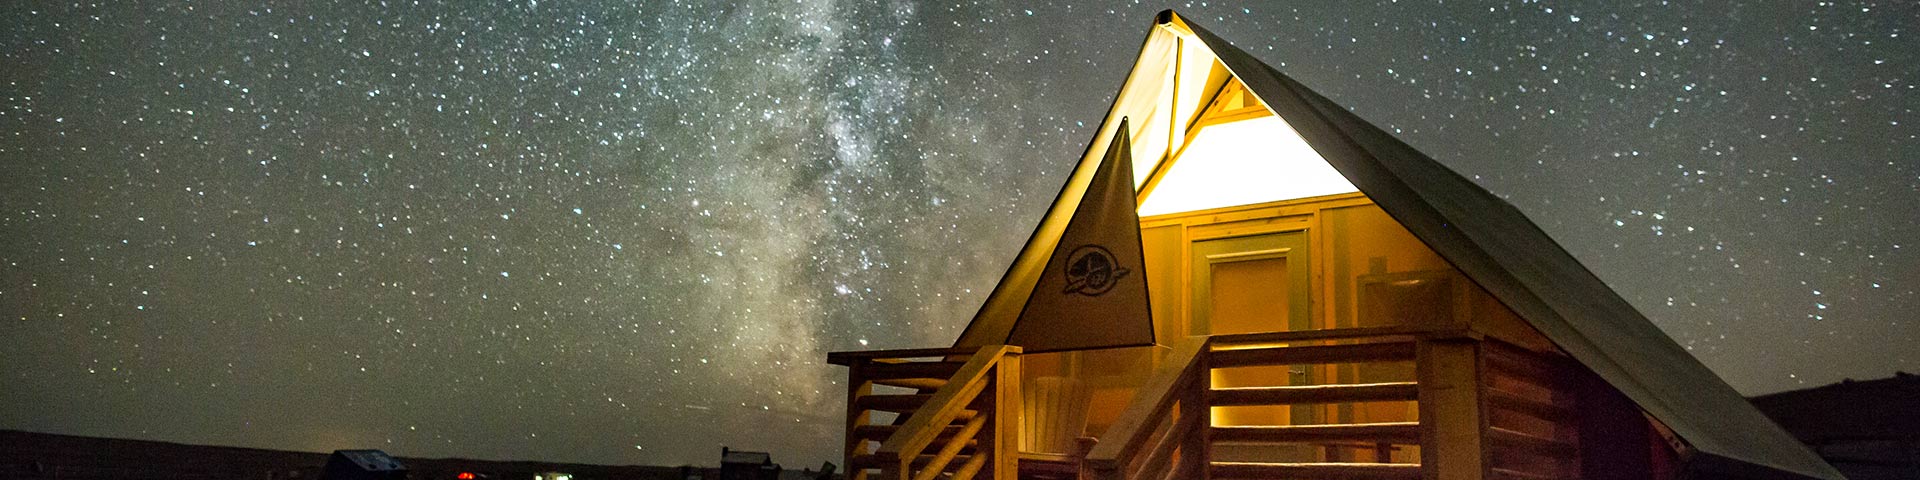  Un abri oTENTik de Parcs Canada entouré de la Voie lactée dans la réserve de ciel étoilé, au parc national des Prairies.